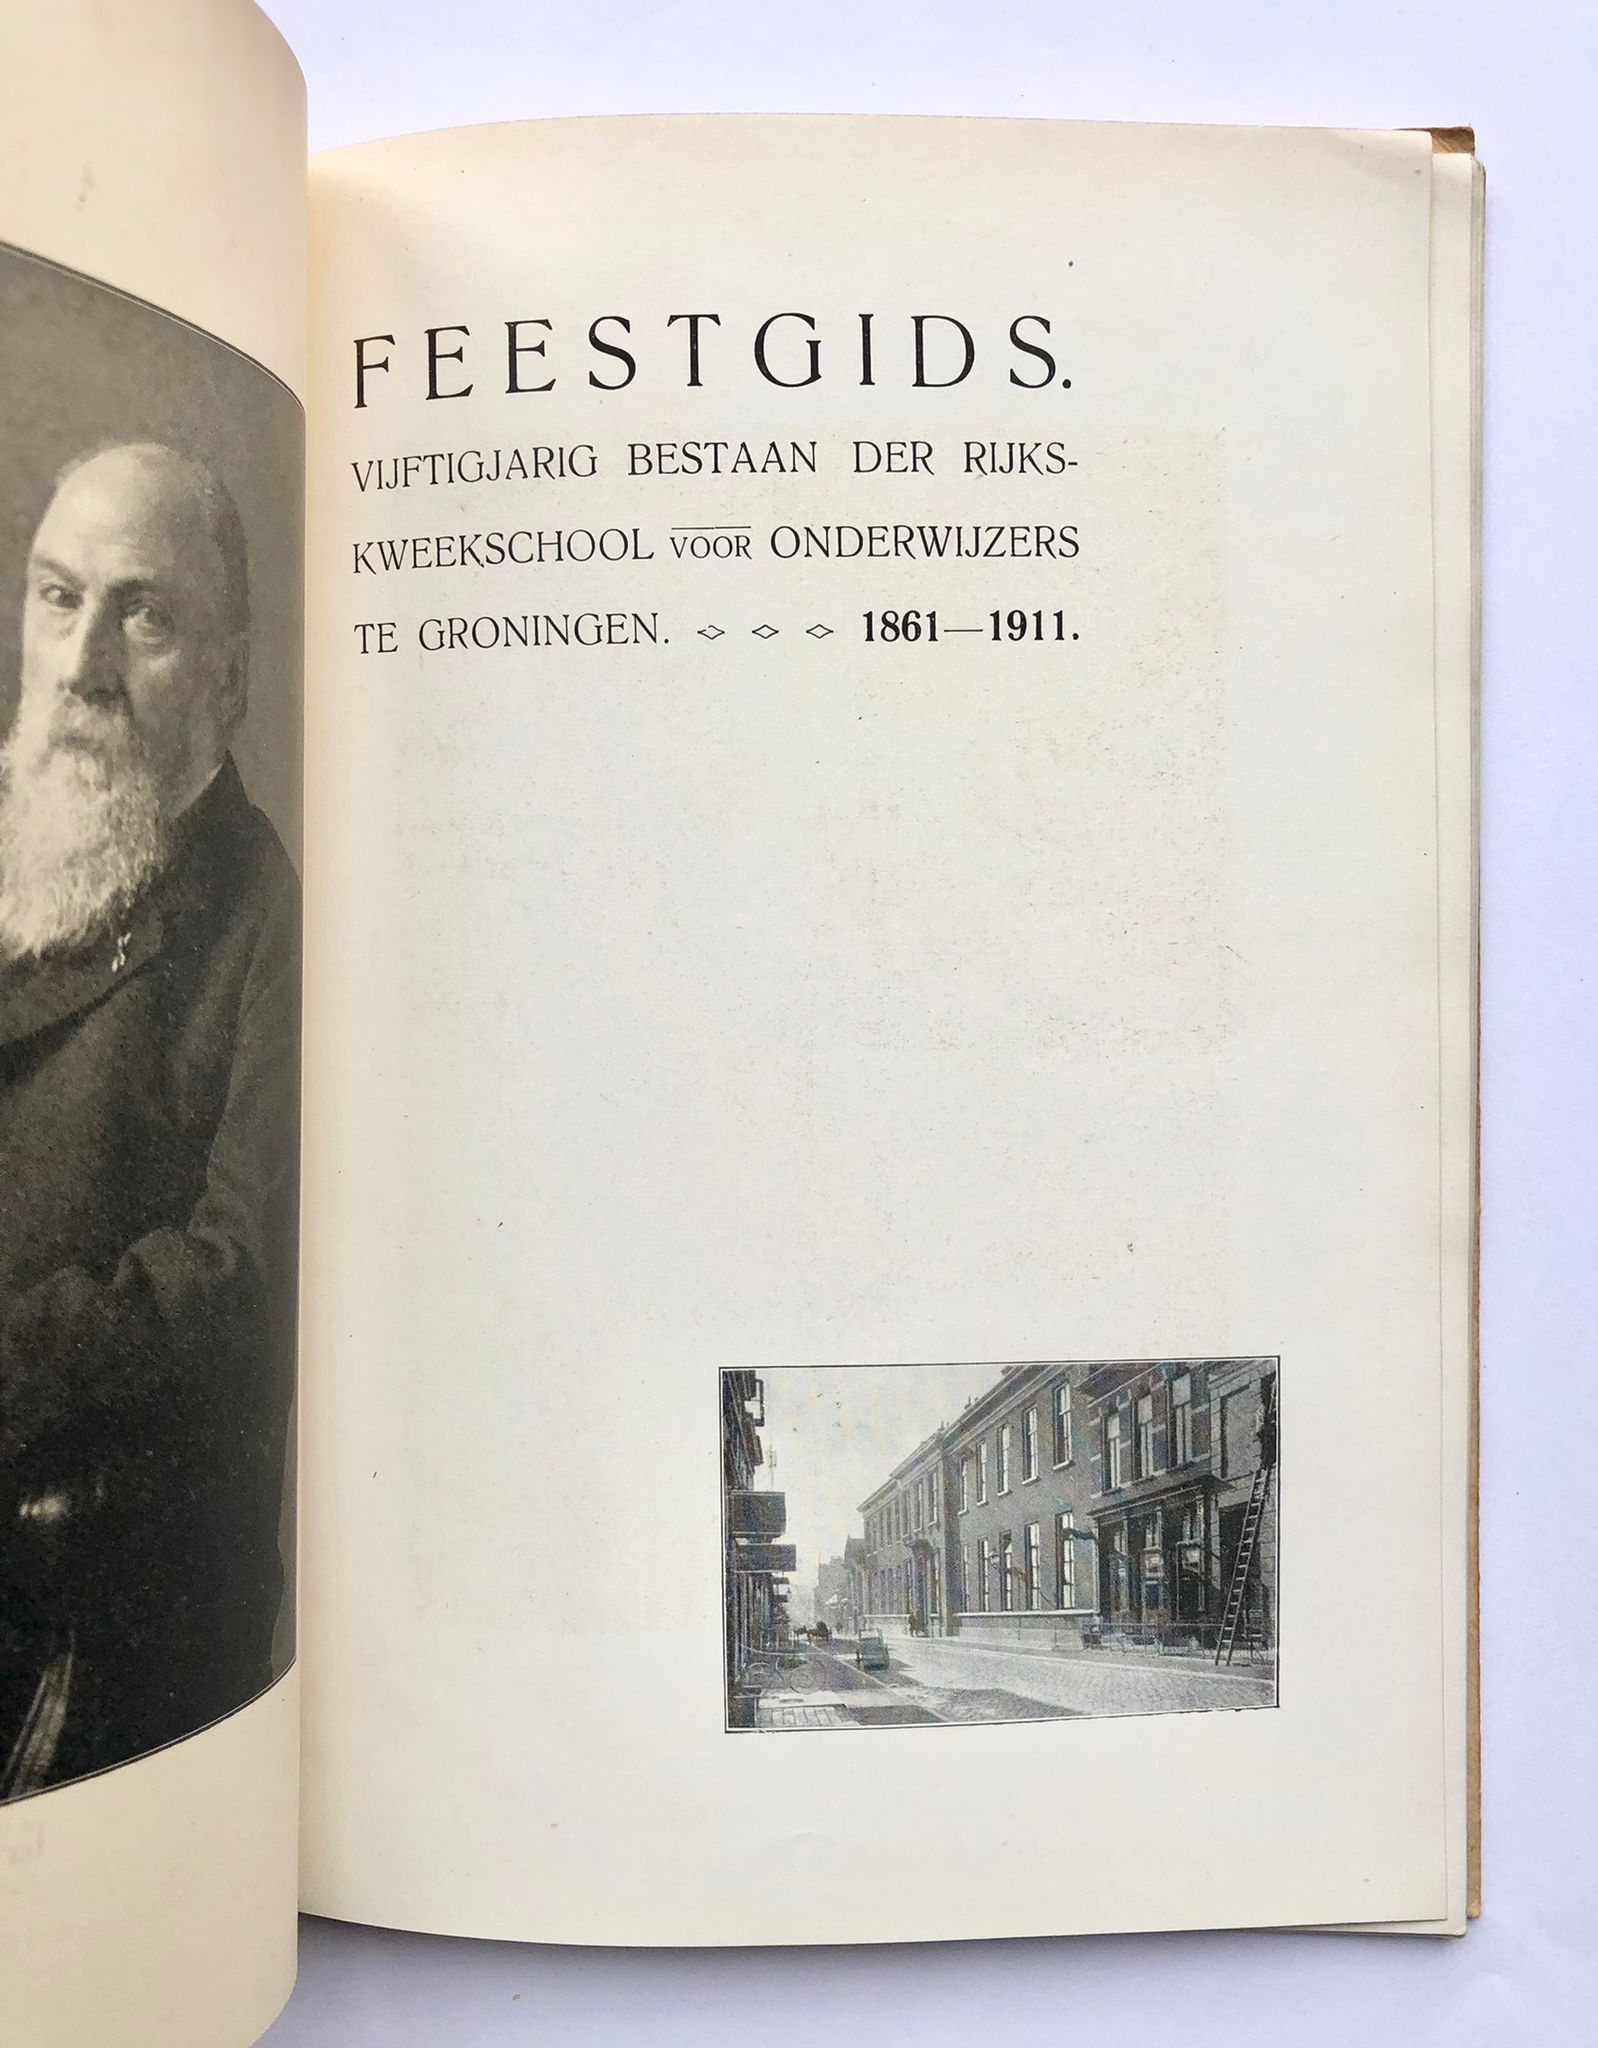 [Groningen] Feestgids vijftigjarig bestaan der Rijkskweekschool voor onderwijzers te Groningen, 1861-1911, Groningen 1912, 48 pp.